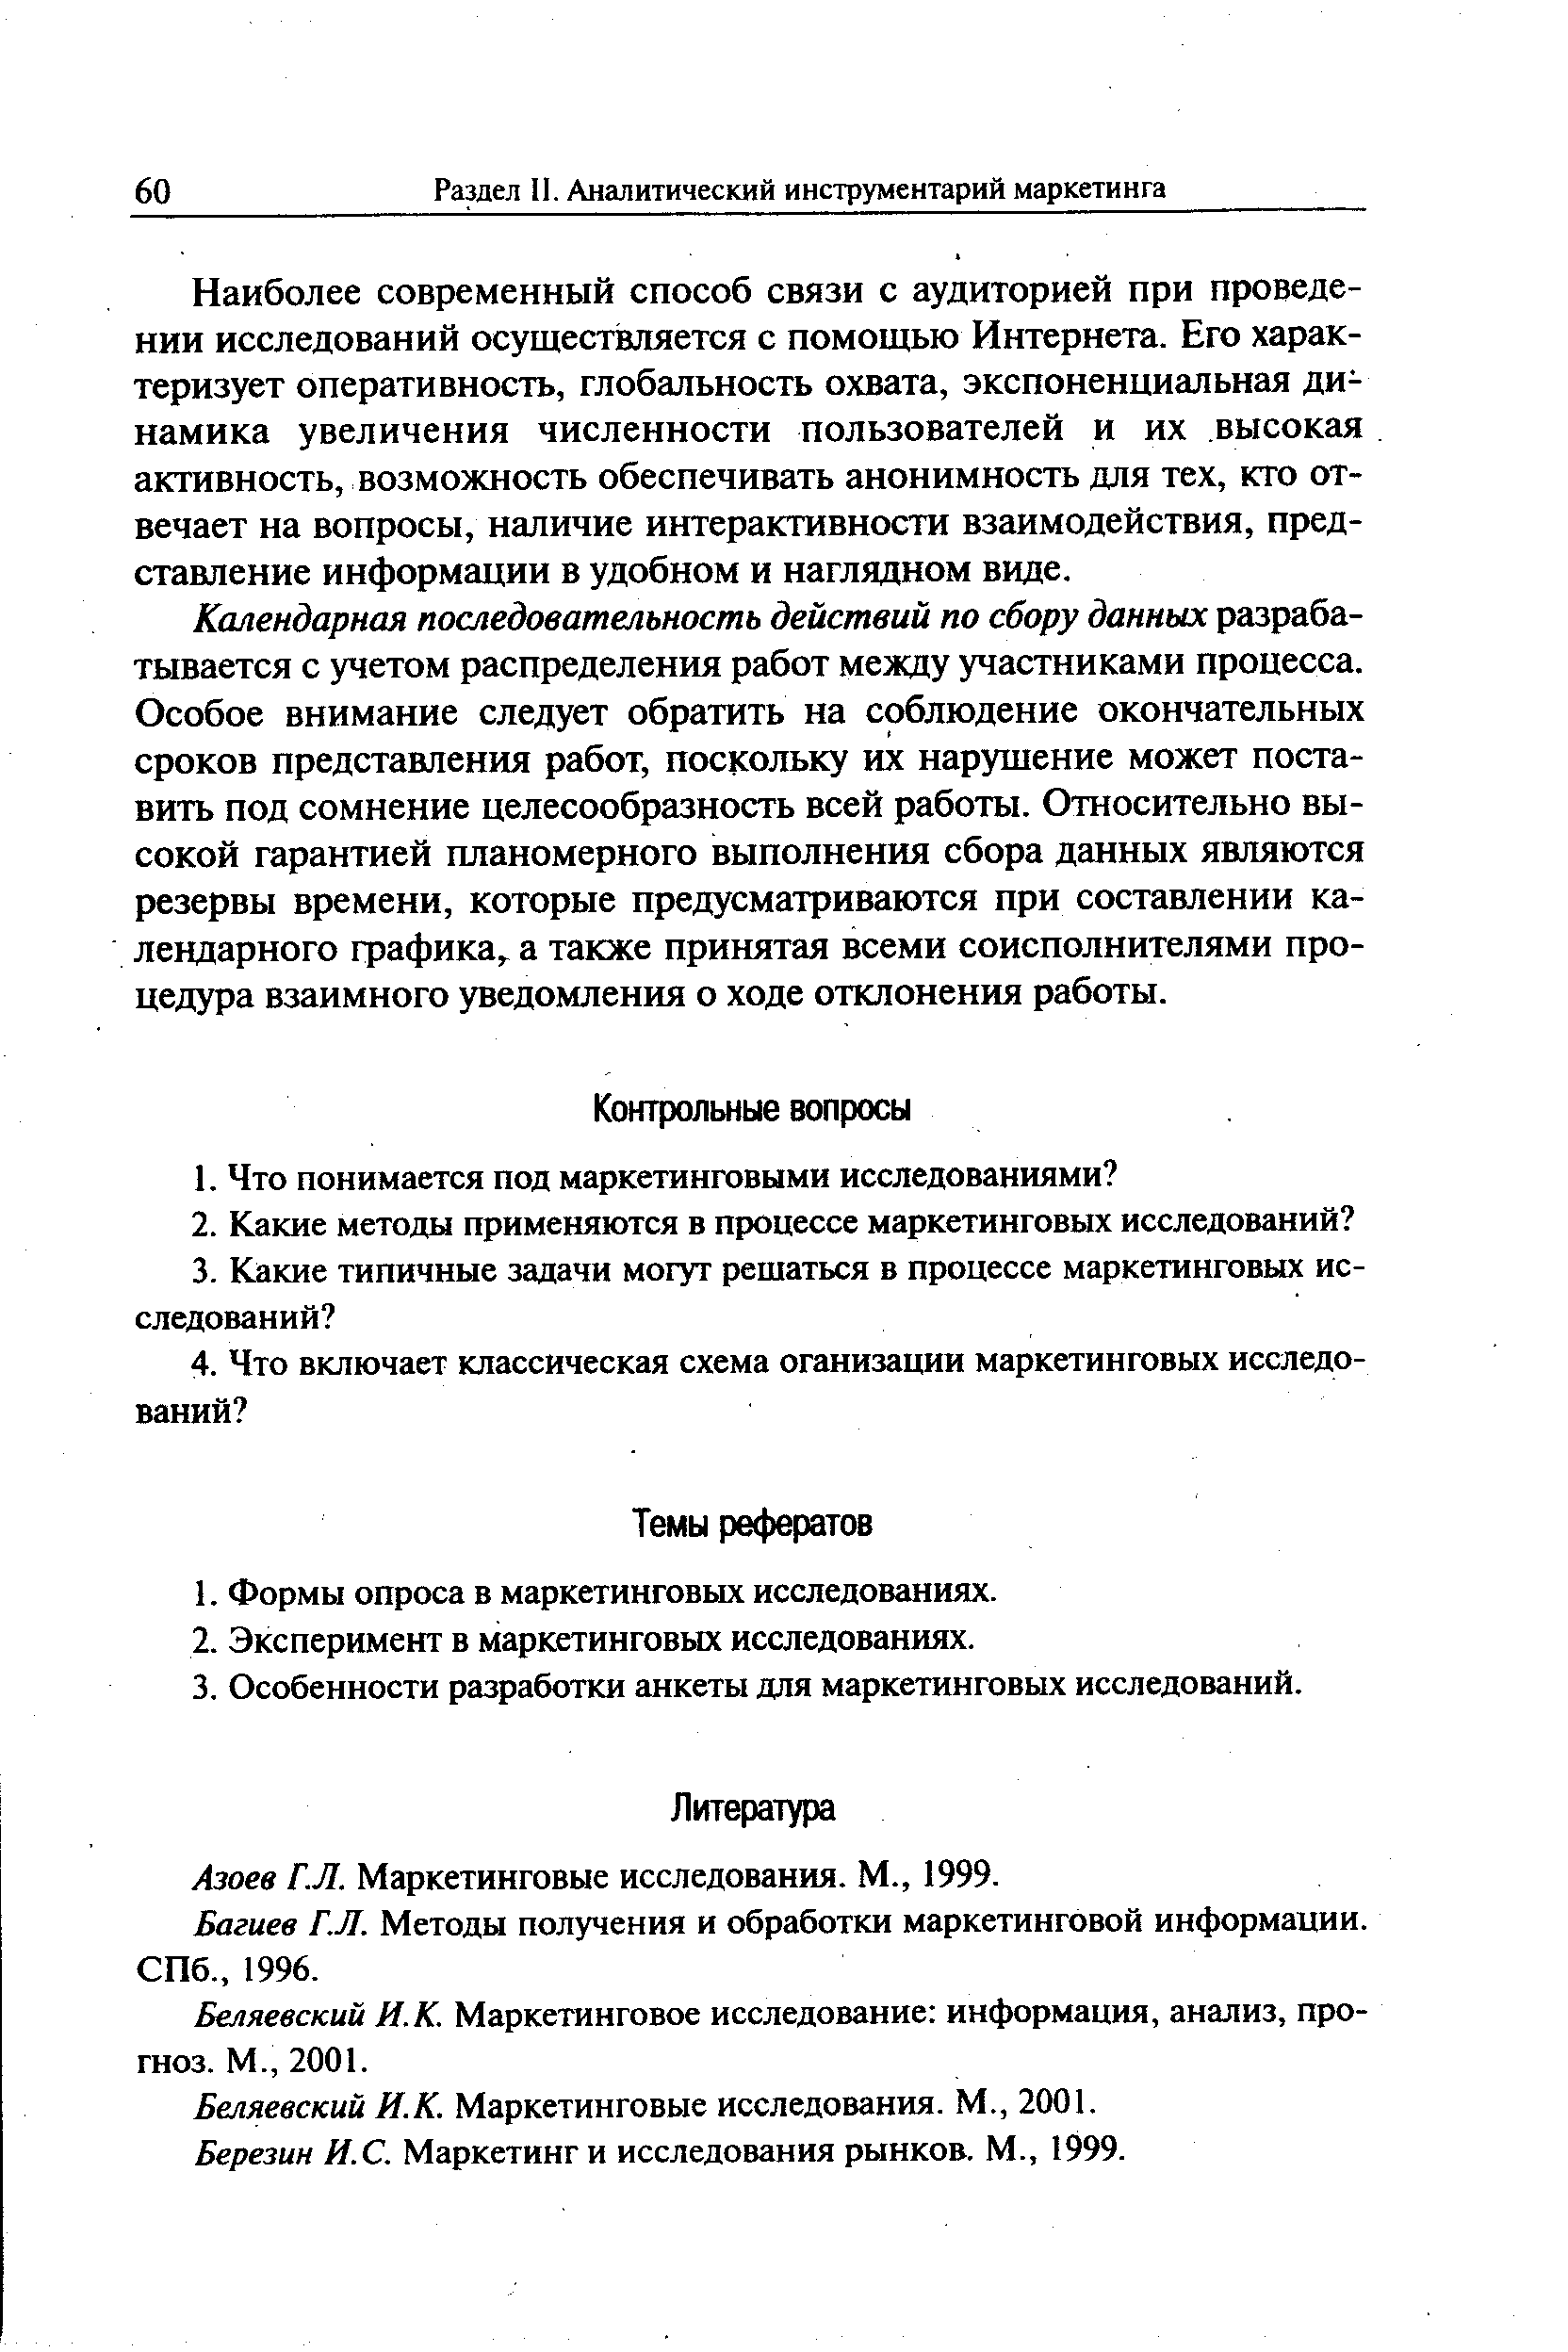 Багиев Г.Л. Методы получения и обработки маркетинговой информации. СПб., 1996.
